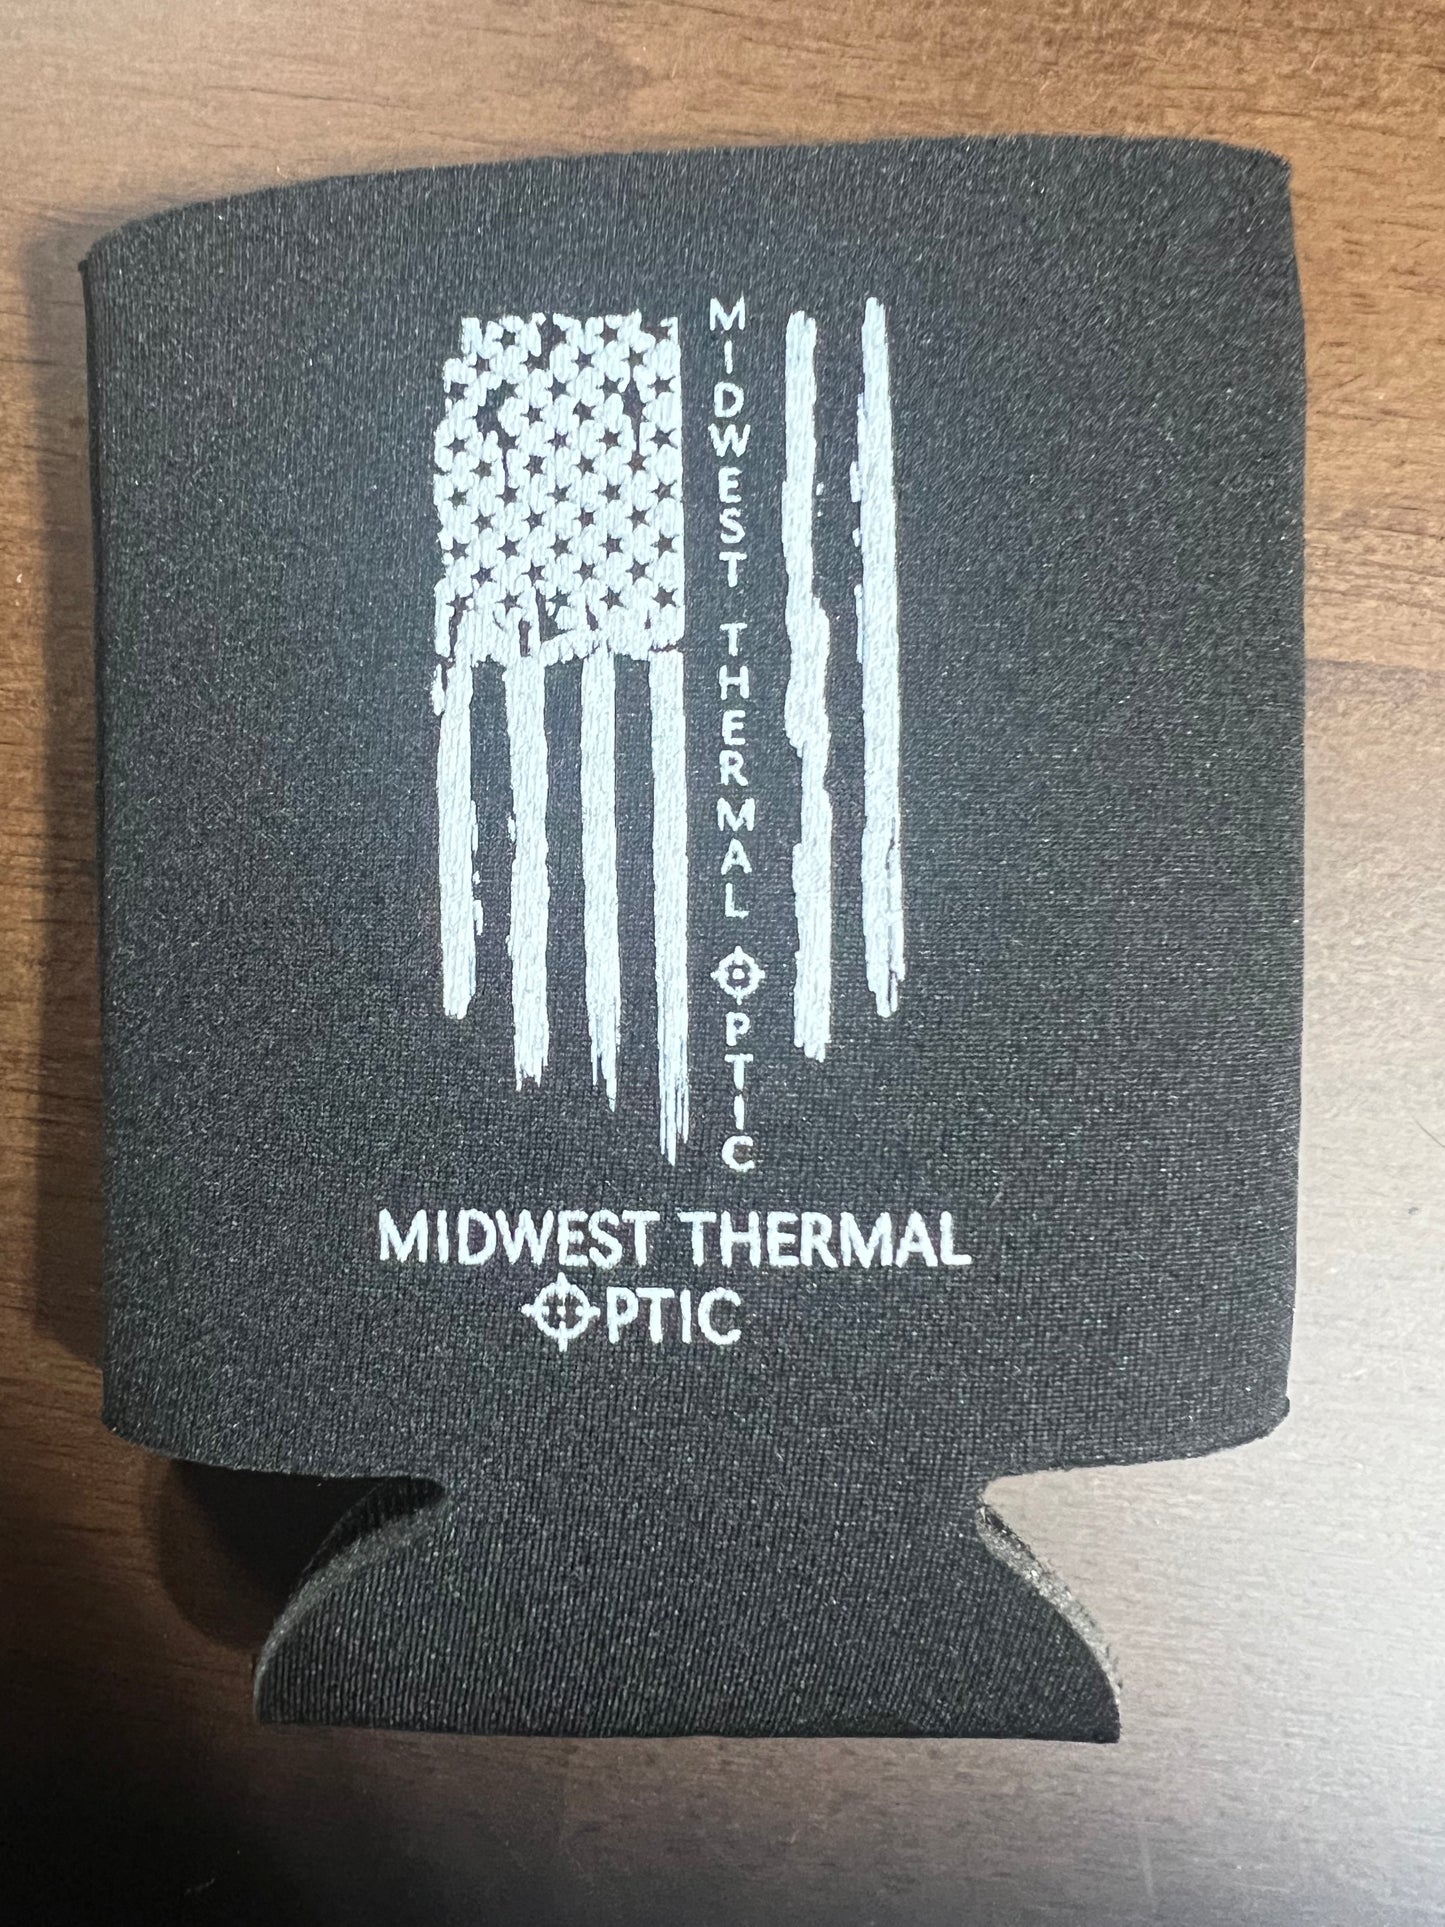 Midwest Thermal Optic Koozie